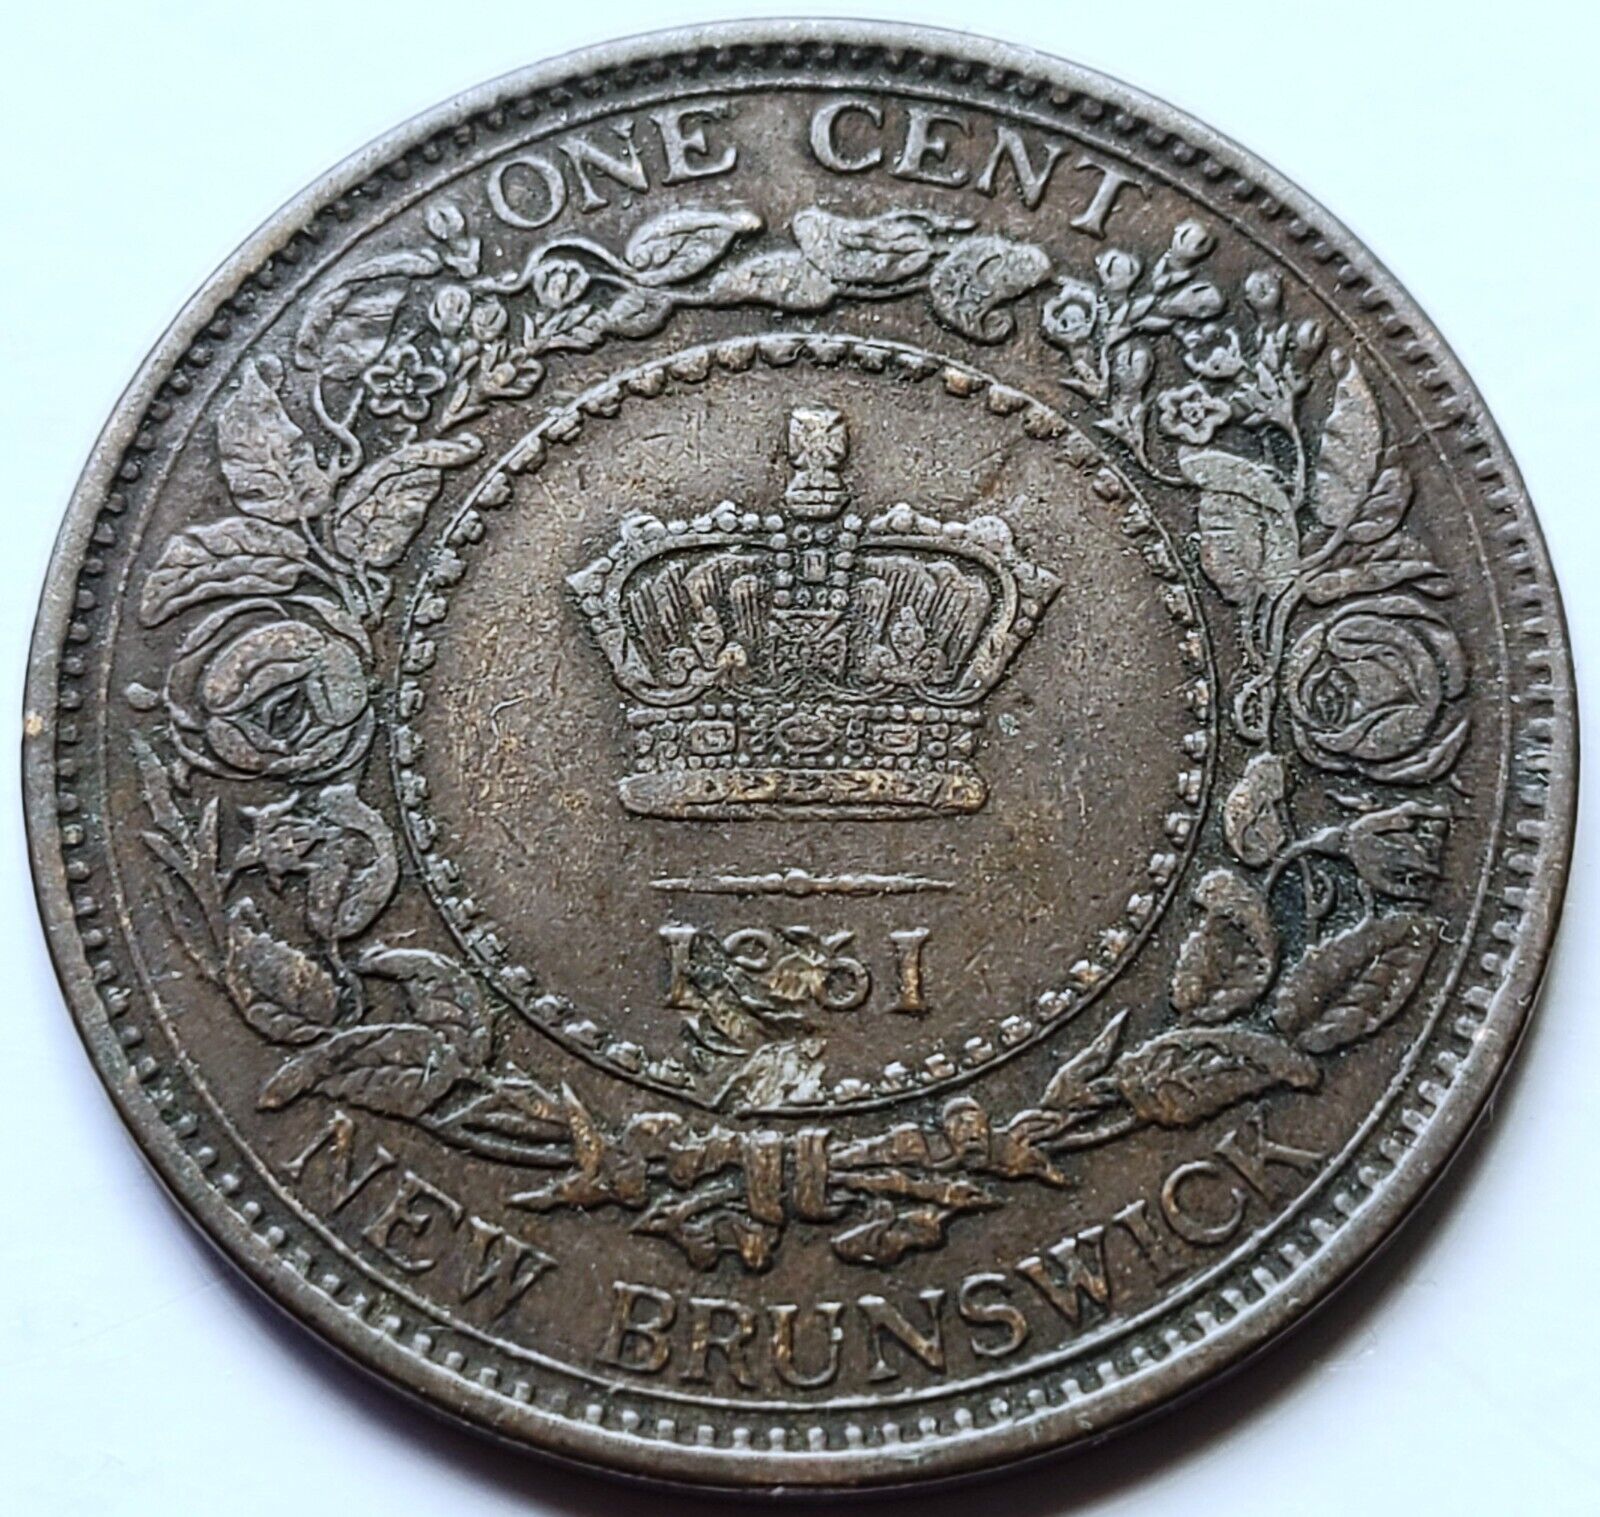 1861 New Brunswick One Cent Coin - Struck Thru Object